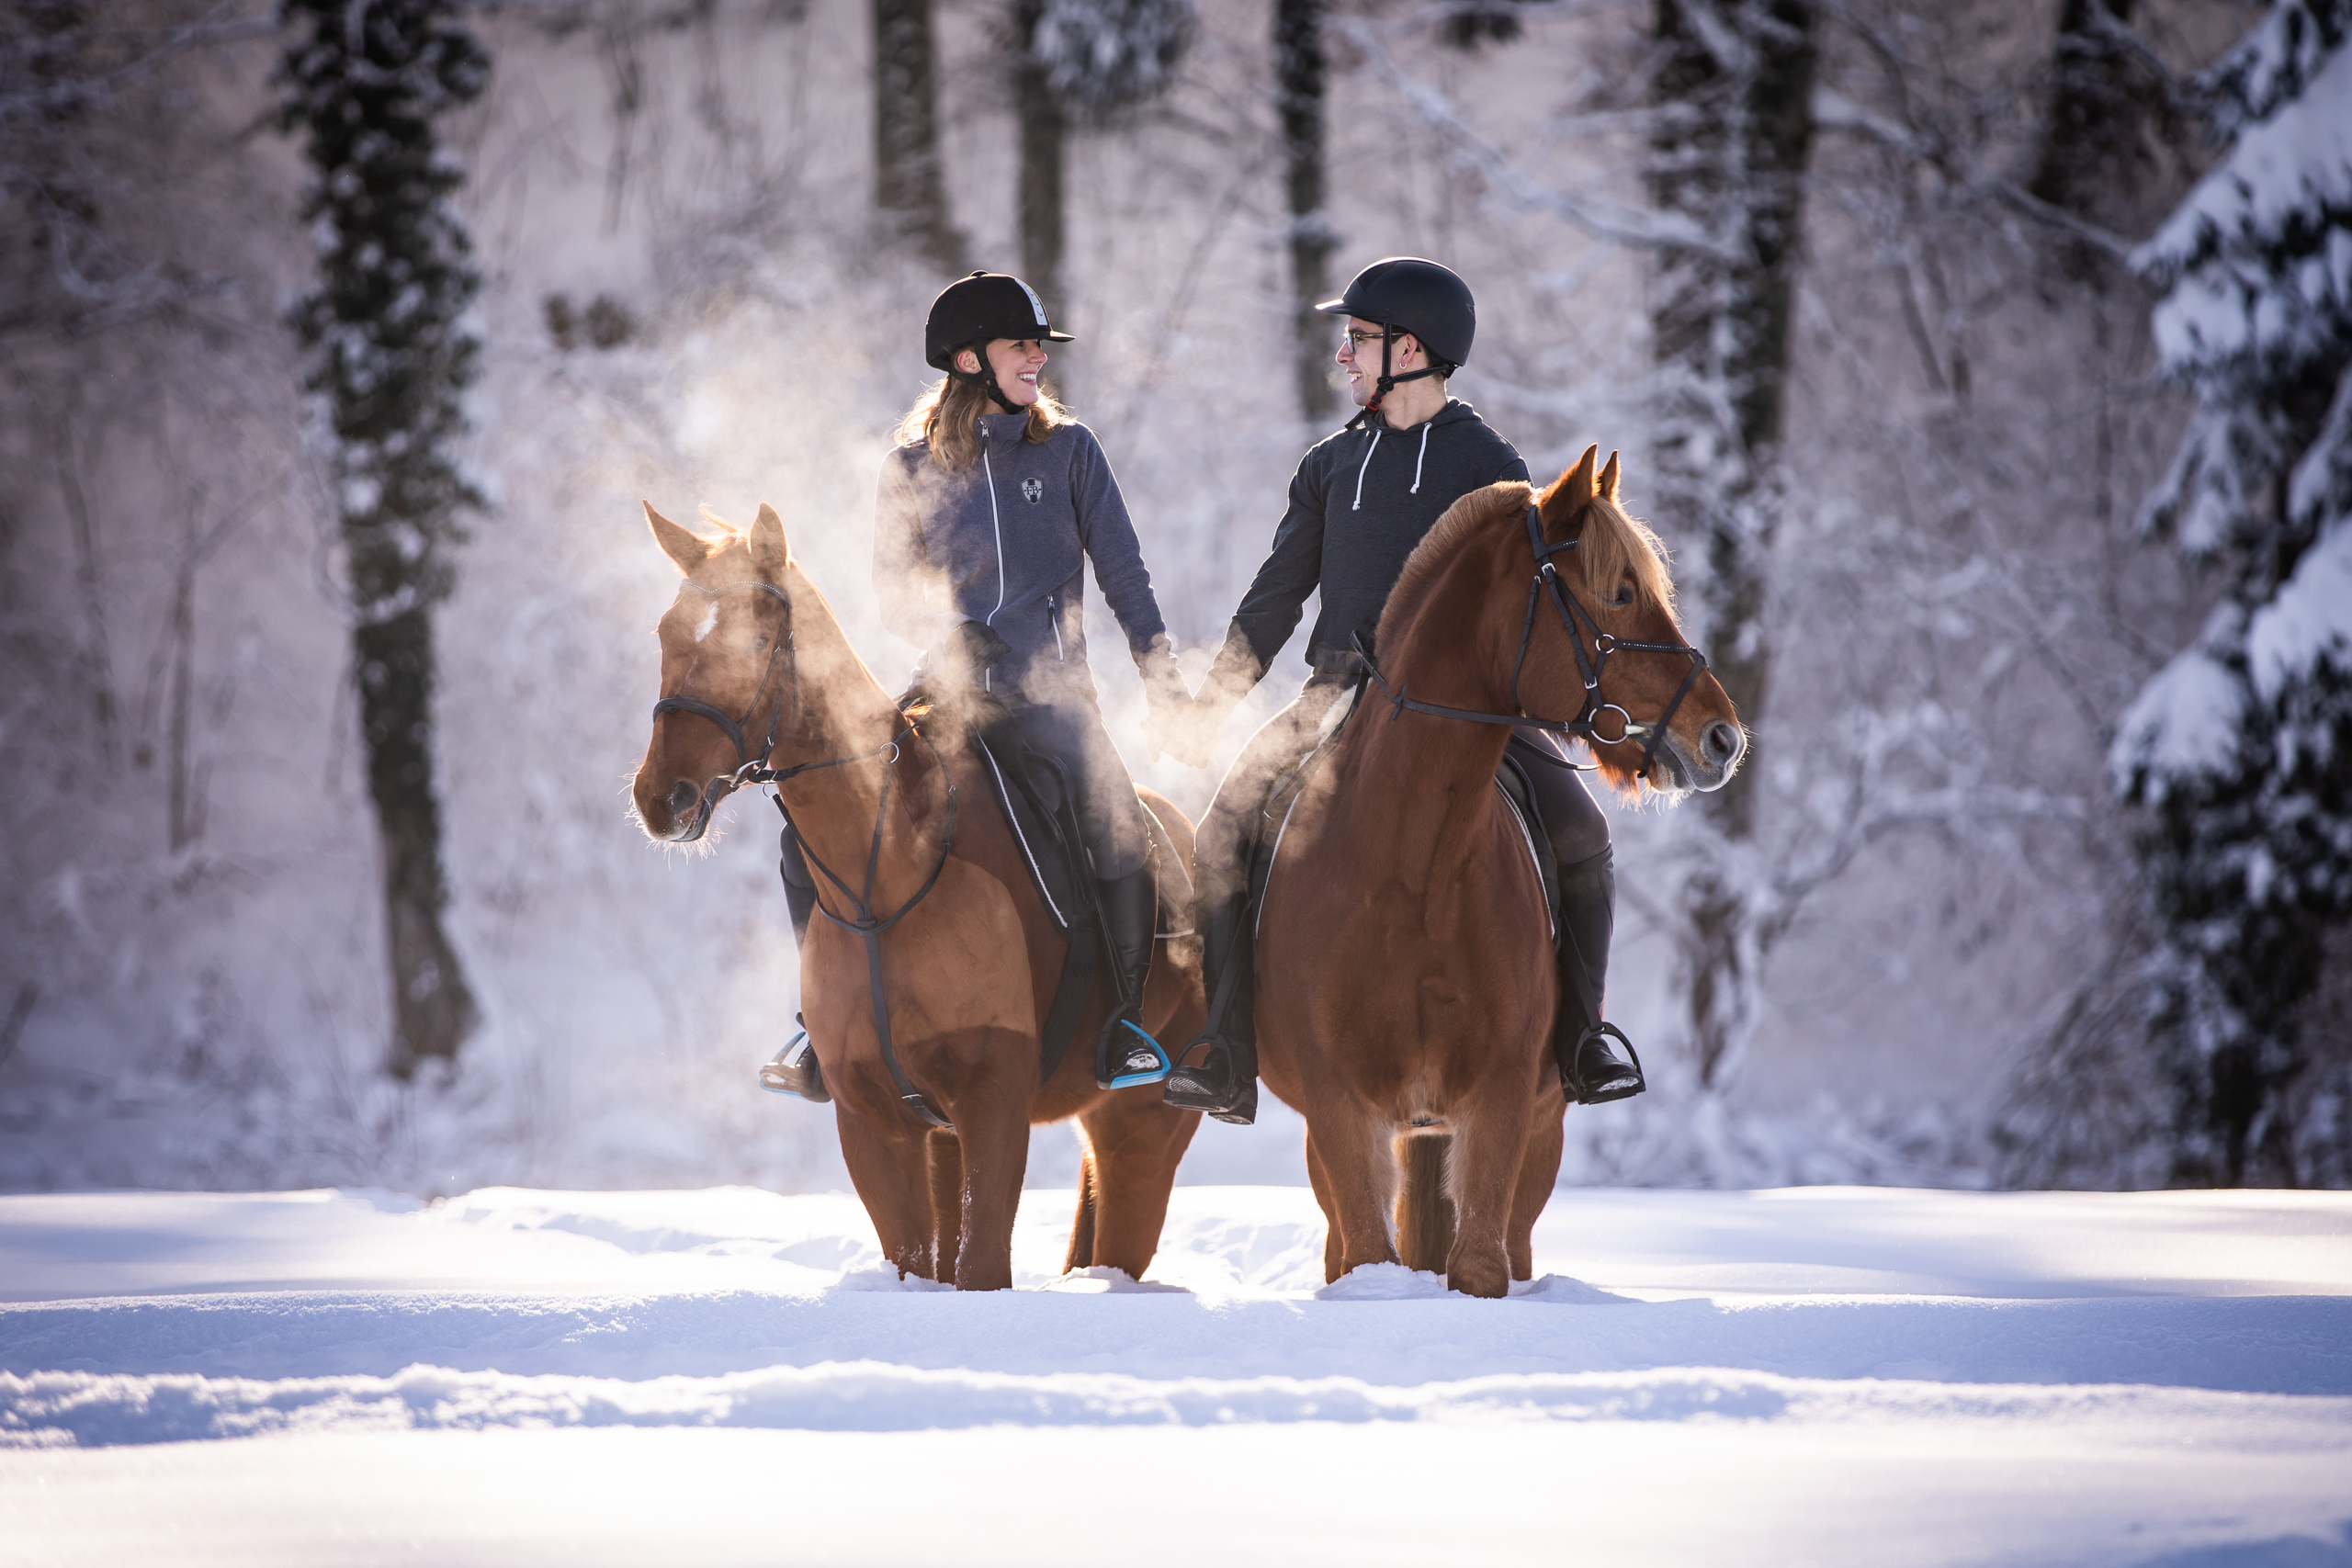 Pferde;Portfolio;Schnee;Tierfotografie;Winter;lumo obscura;outdoor